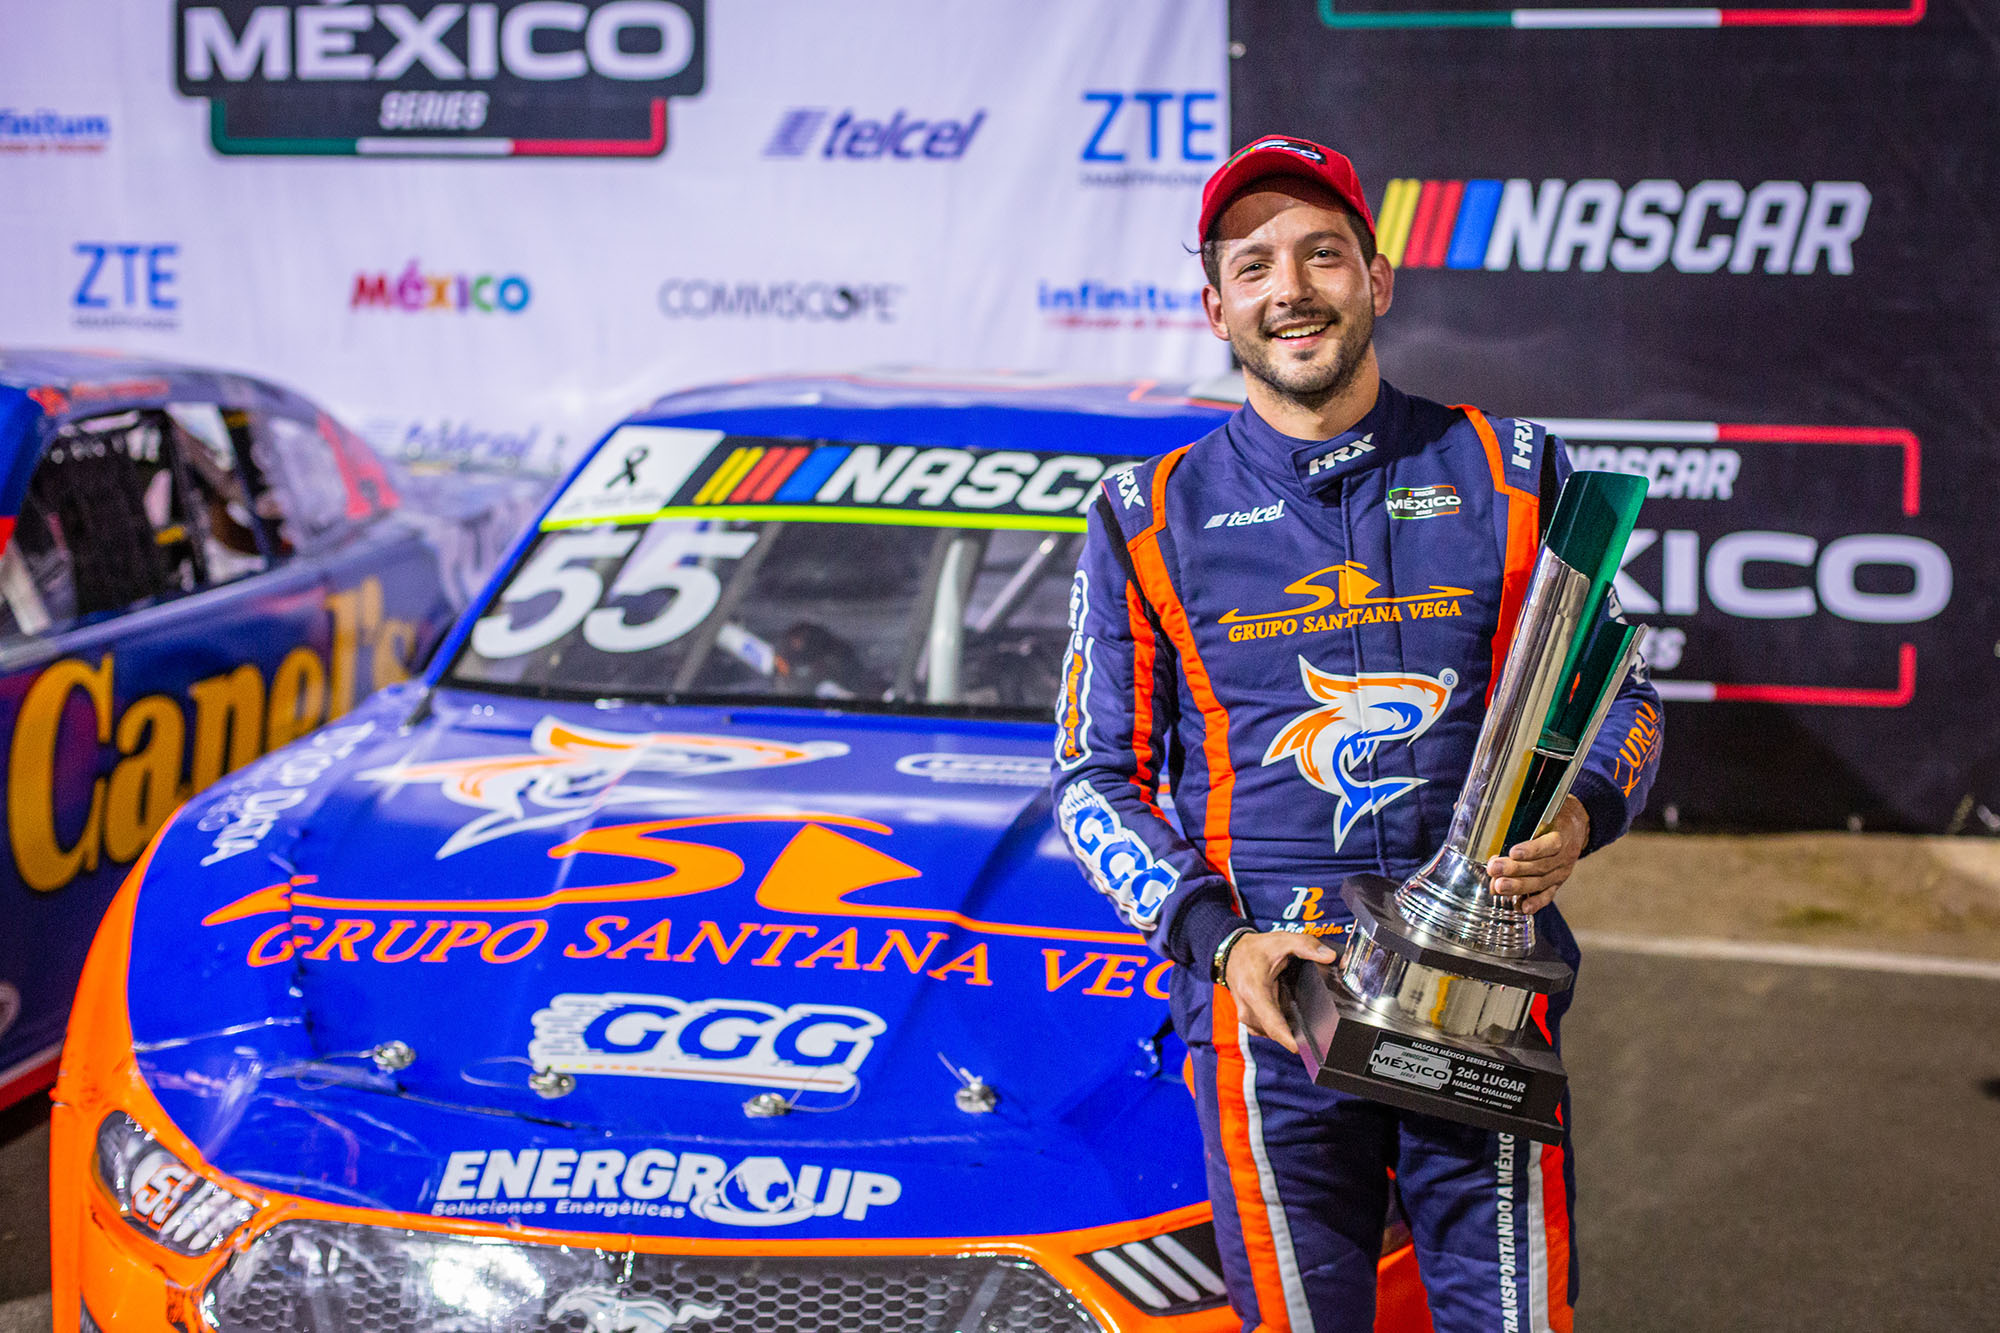 Julio Rejón y la Escudería GGG, al podio en la nocturna de NASCAR México en Chihuahua